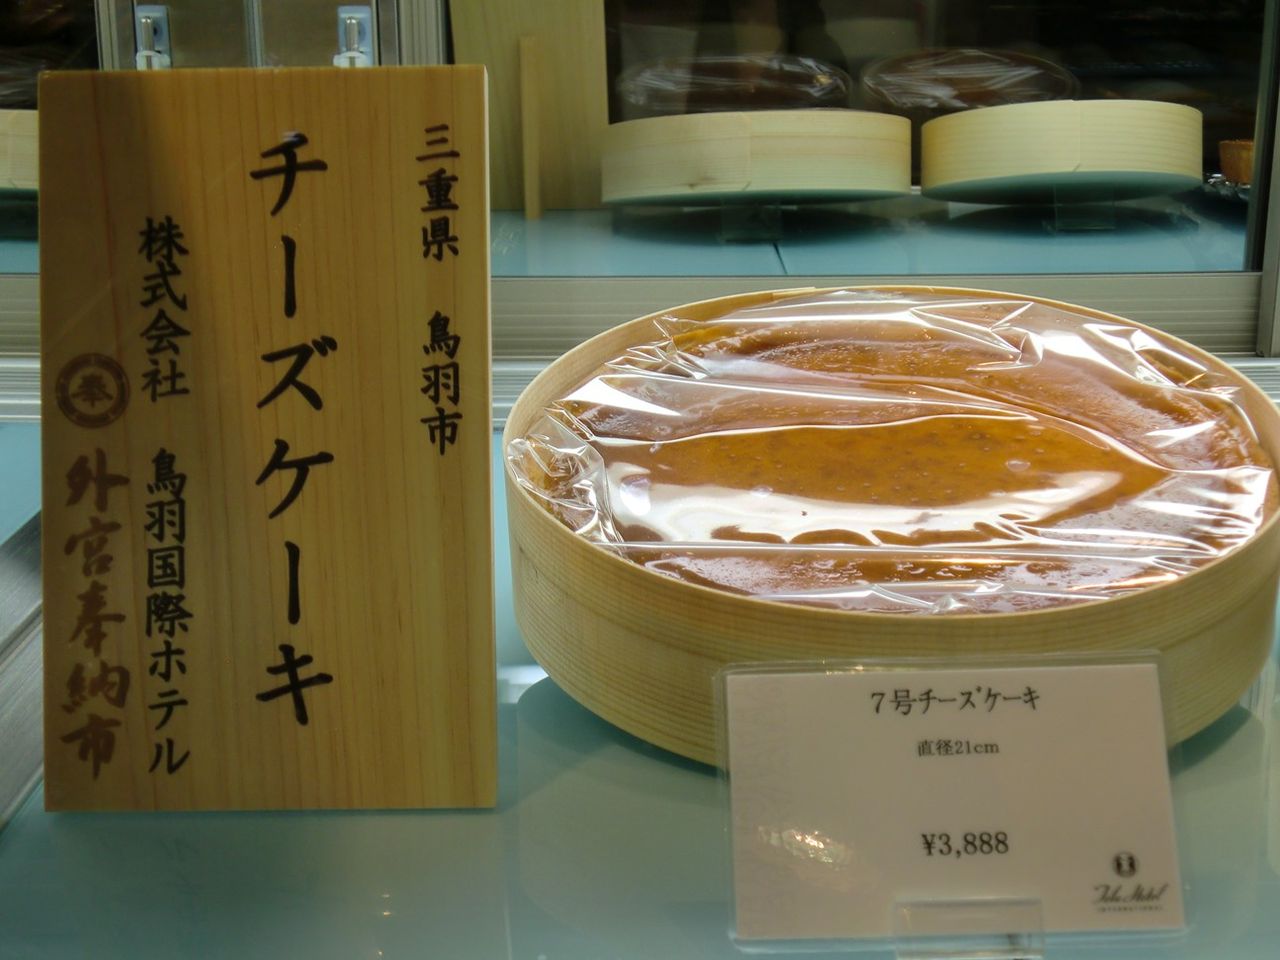 伝統のチーズケーキを伊勢神宮に奉納させて頂きました 鳥羽国際ホテル スタッフだより